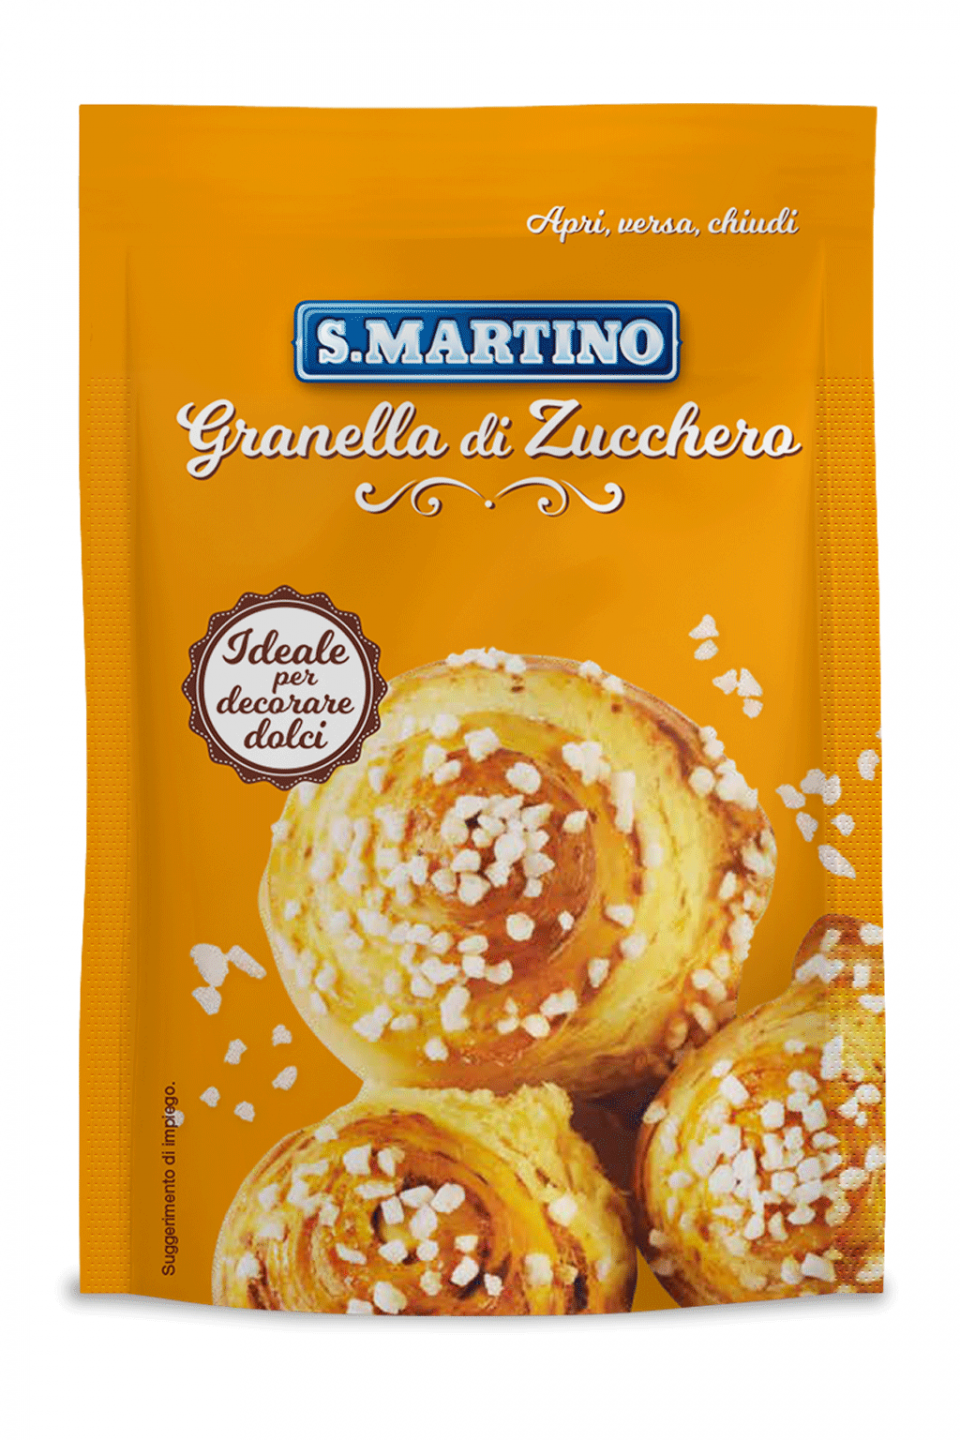 S.MARTINO Granella di Zucchero 125g